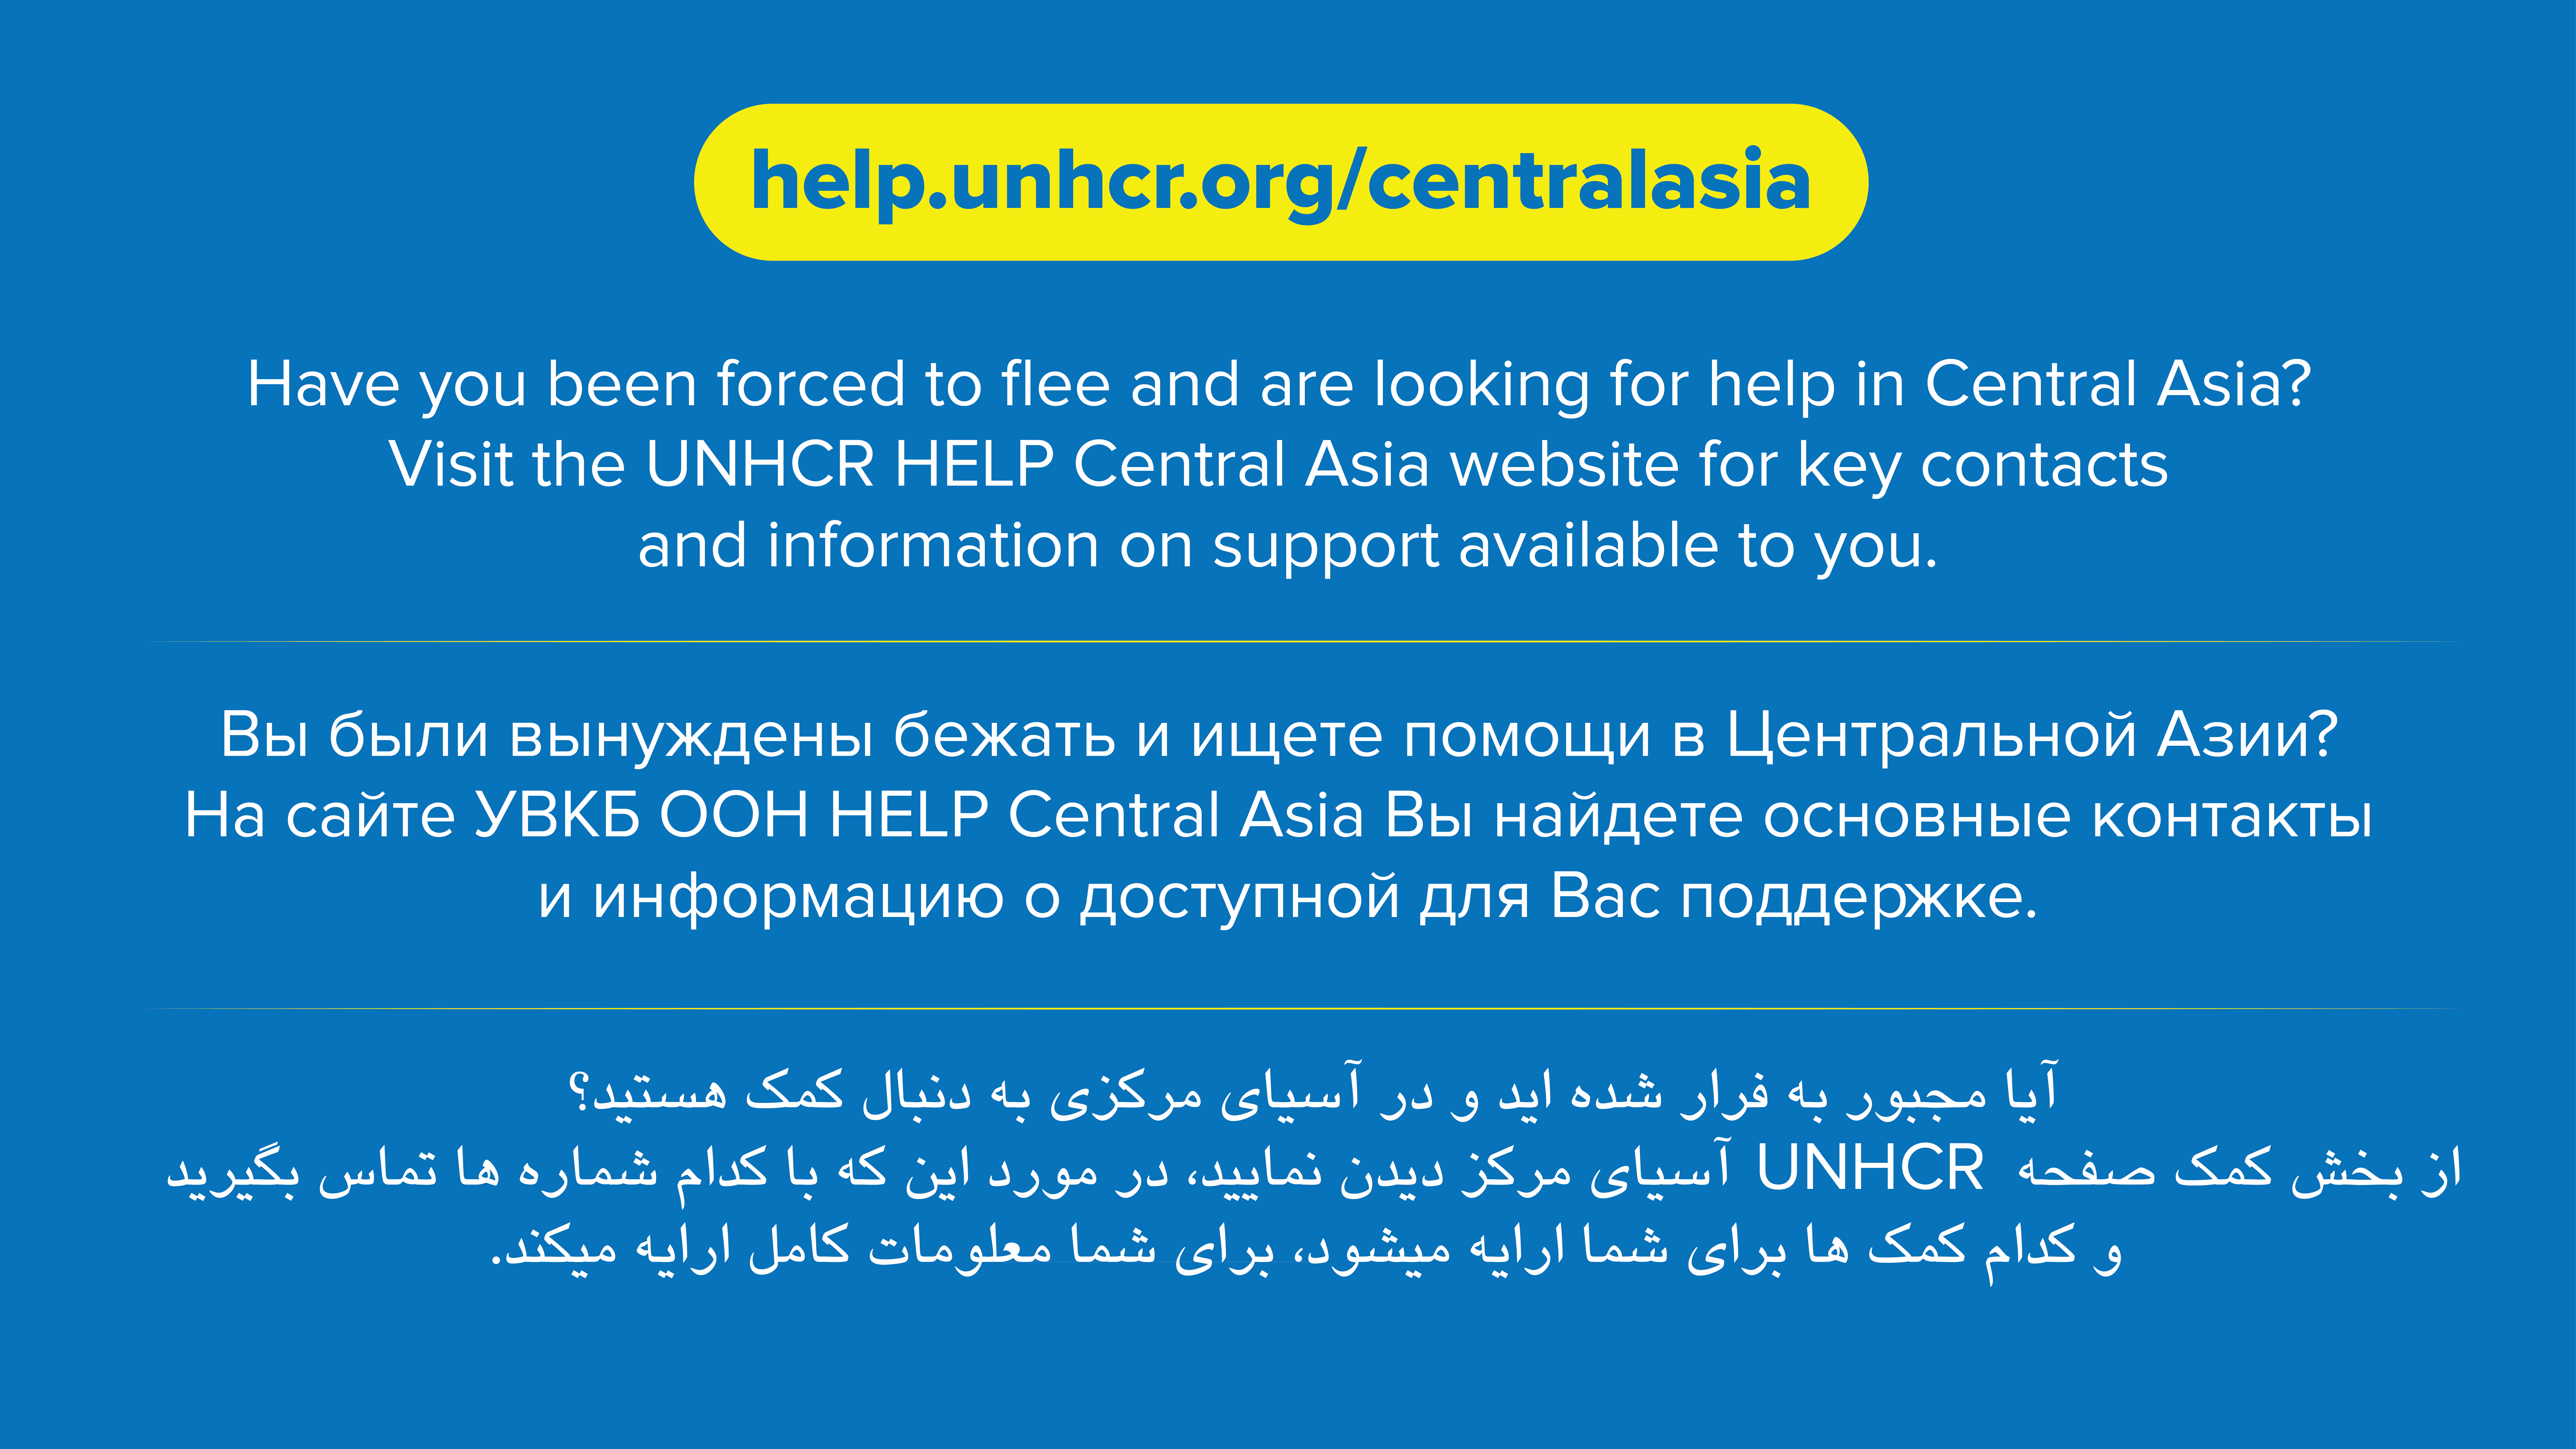 UNHCR Central Asia HELP